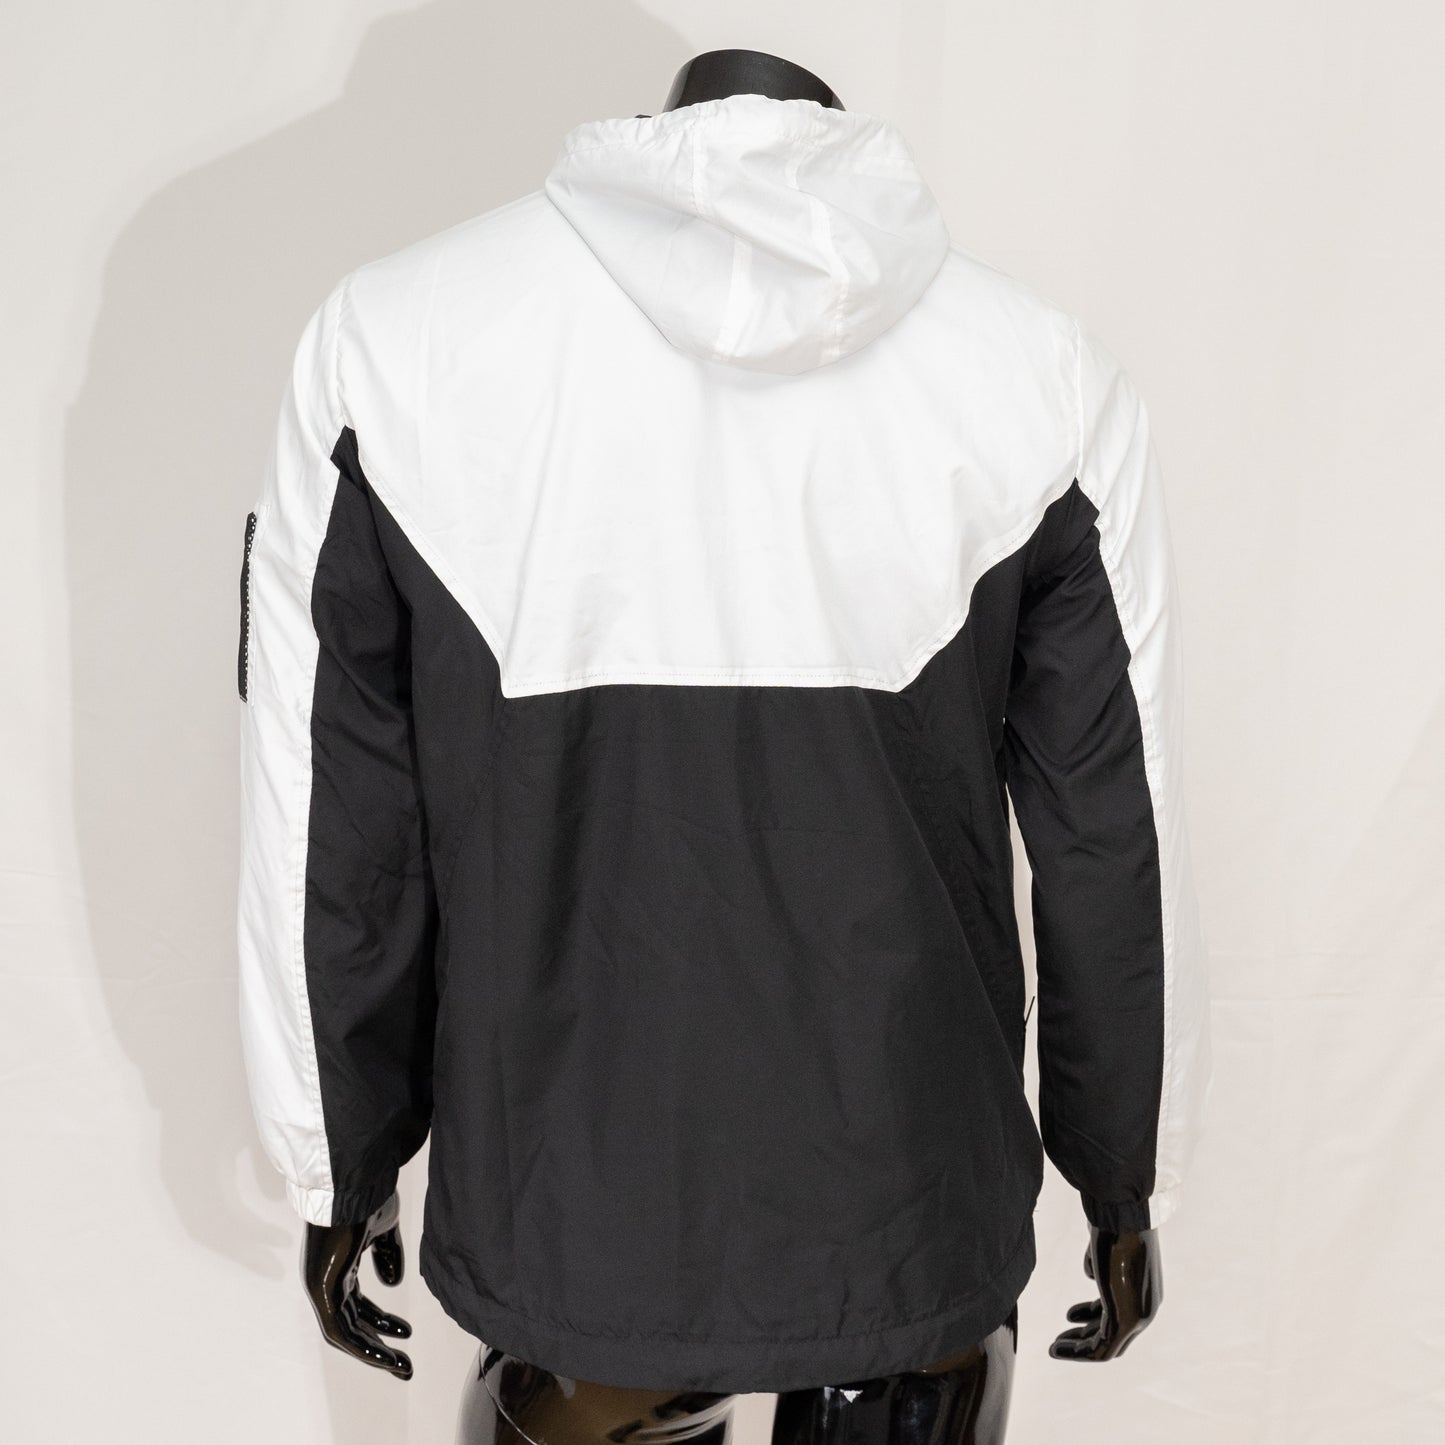 Studio Gear Windbreaker Jacket